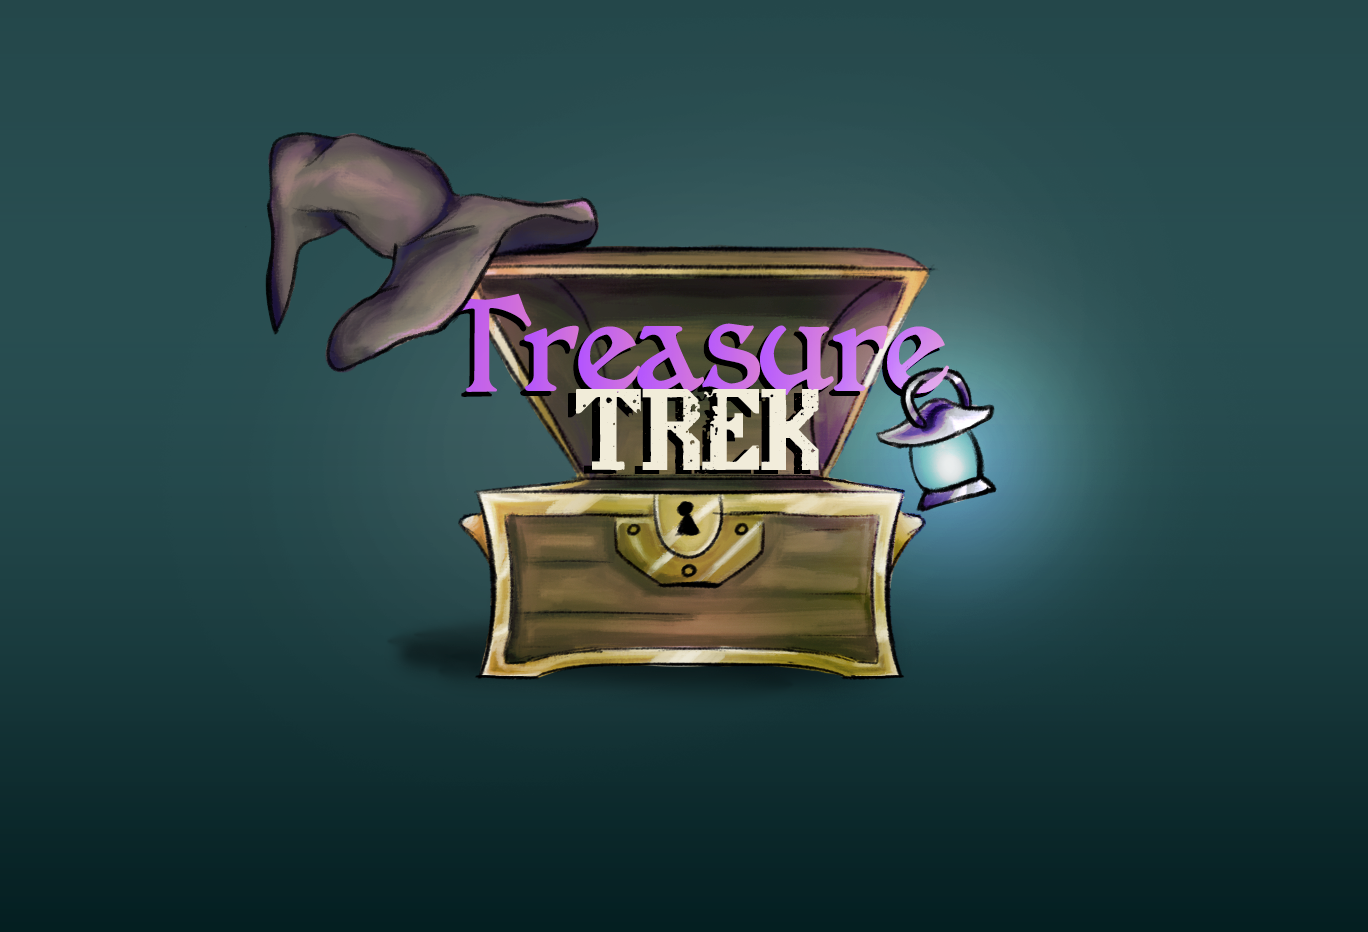 Treasure Trek Cover